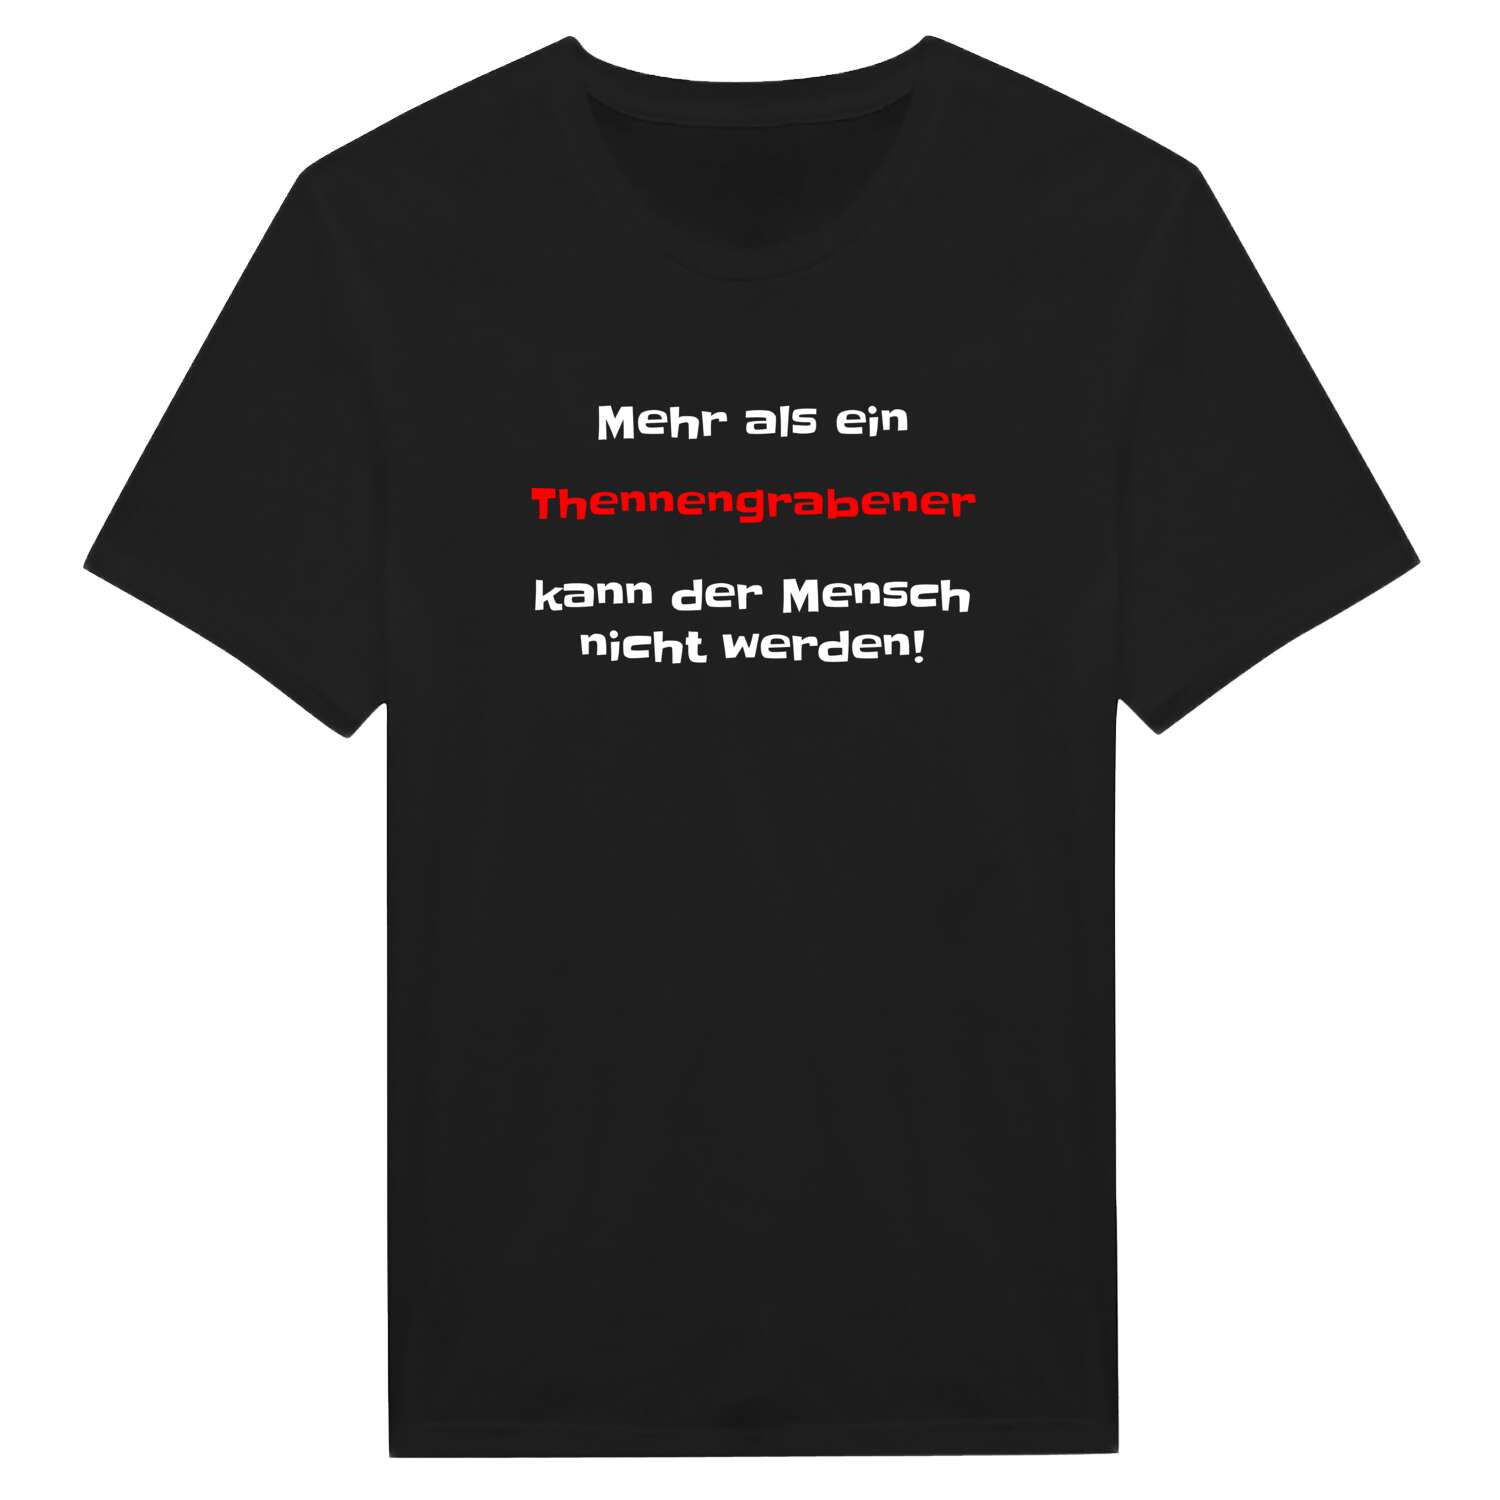 Thennengraben T-Shirt »Mehr als ein«